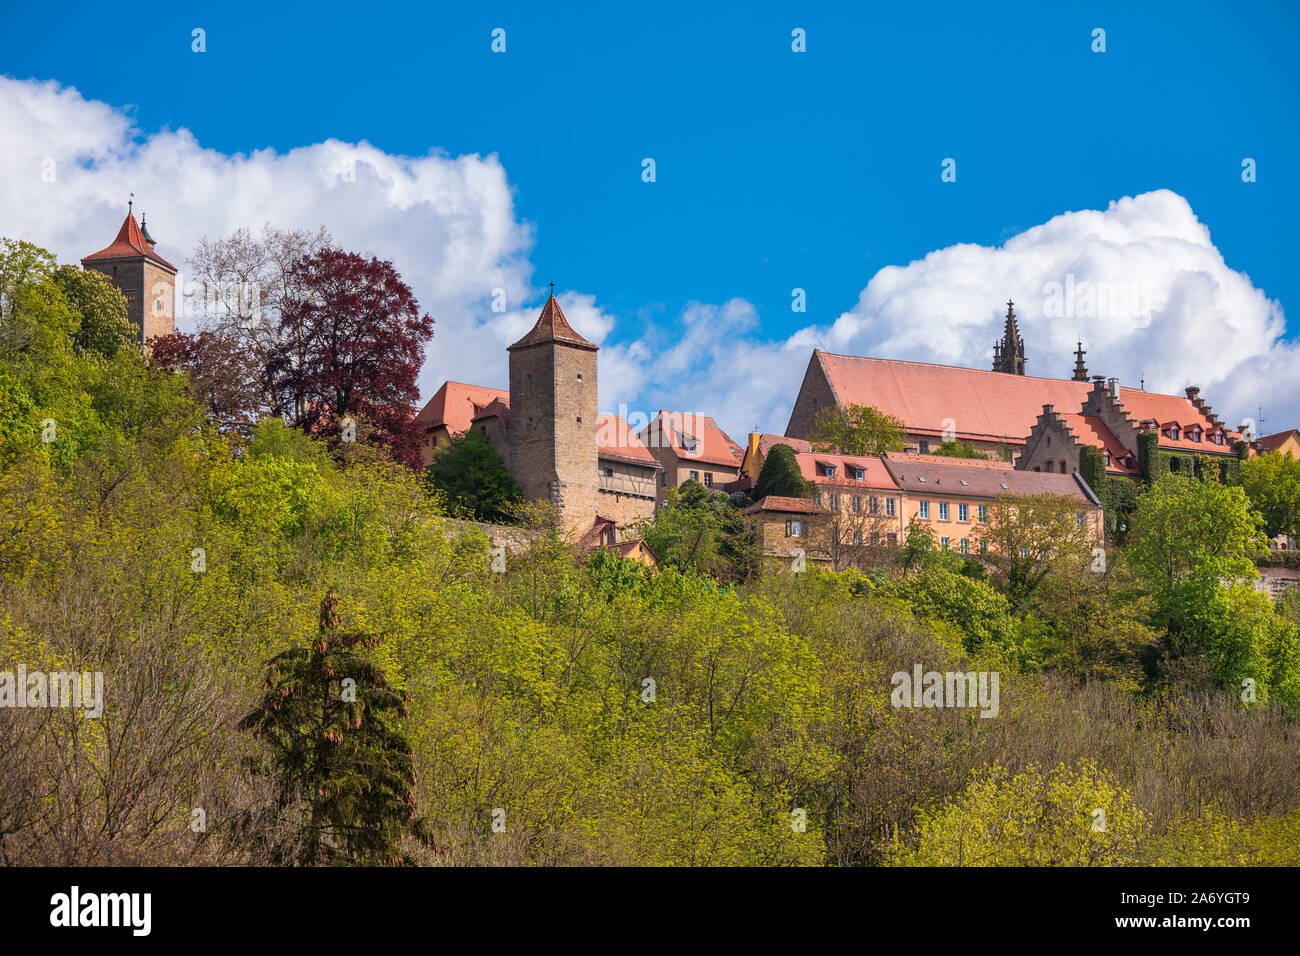 Malerische Skyline von Rothenburg o.d. Tauber, Bayern, Deutschland, Europa, eines der beliebtesten Reiseziel auf der Romantischen Straße touristische Route als s Stockfoto